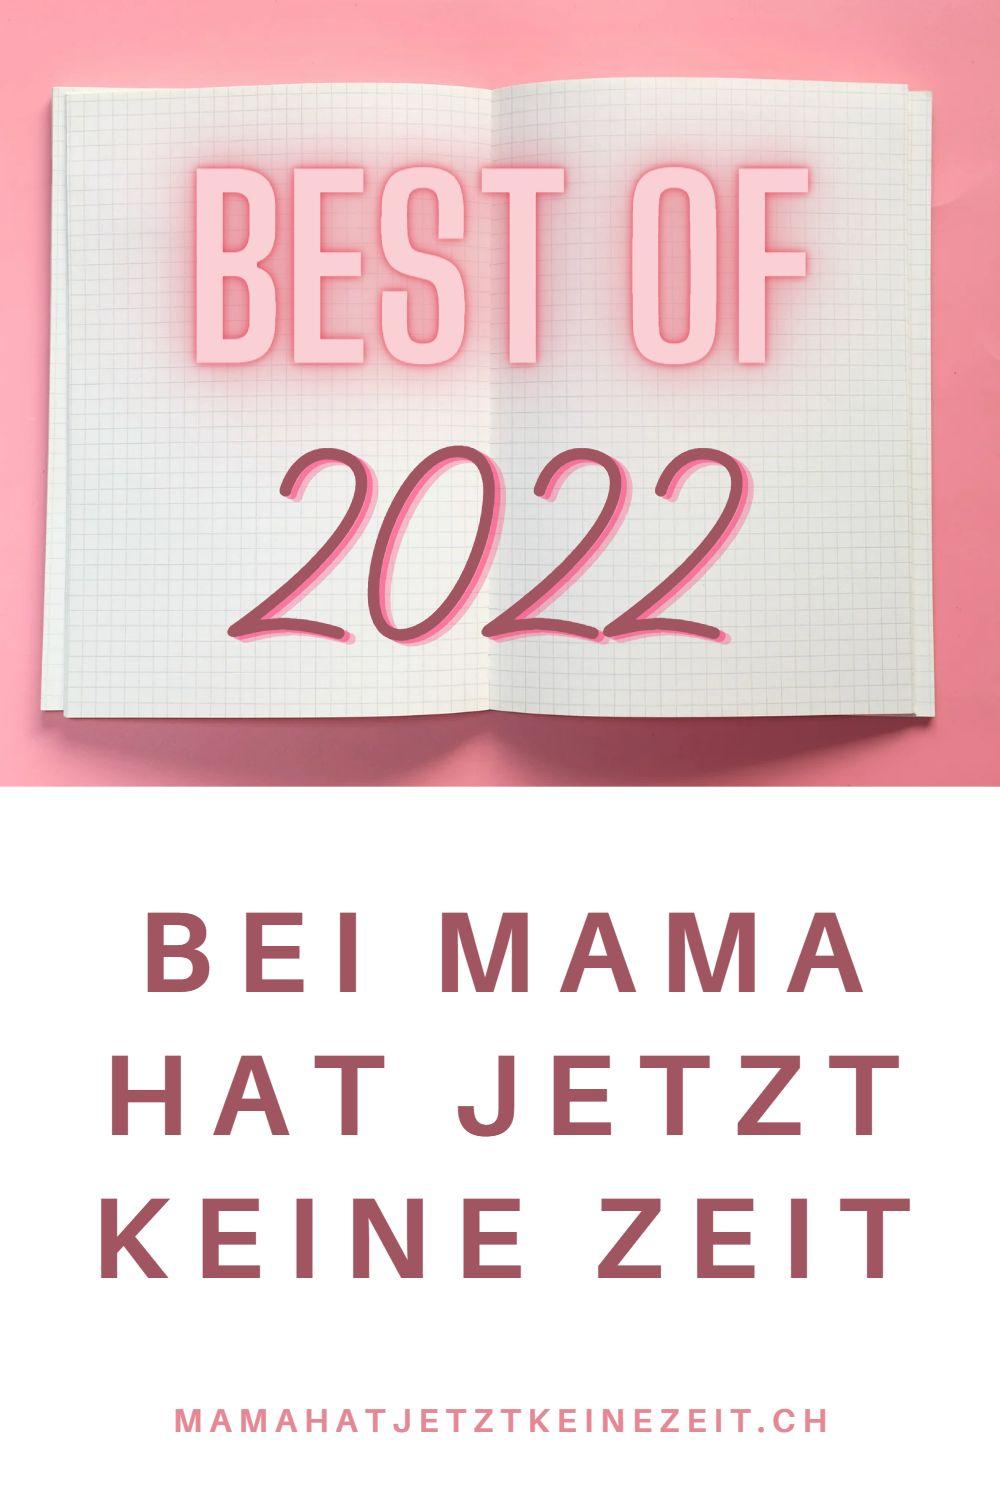 Best of 2022 Artikel von Mama hat jetzt keine Zeit